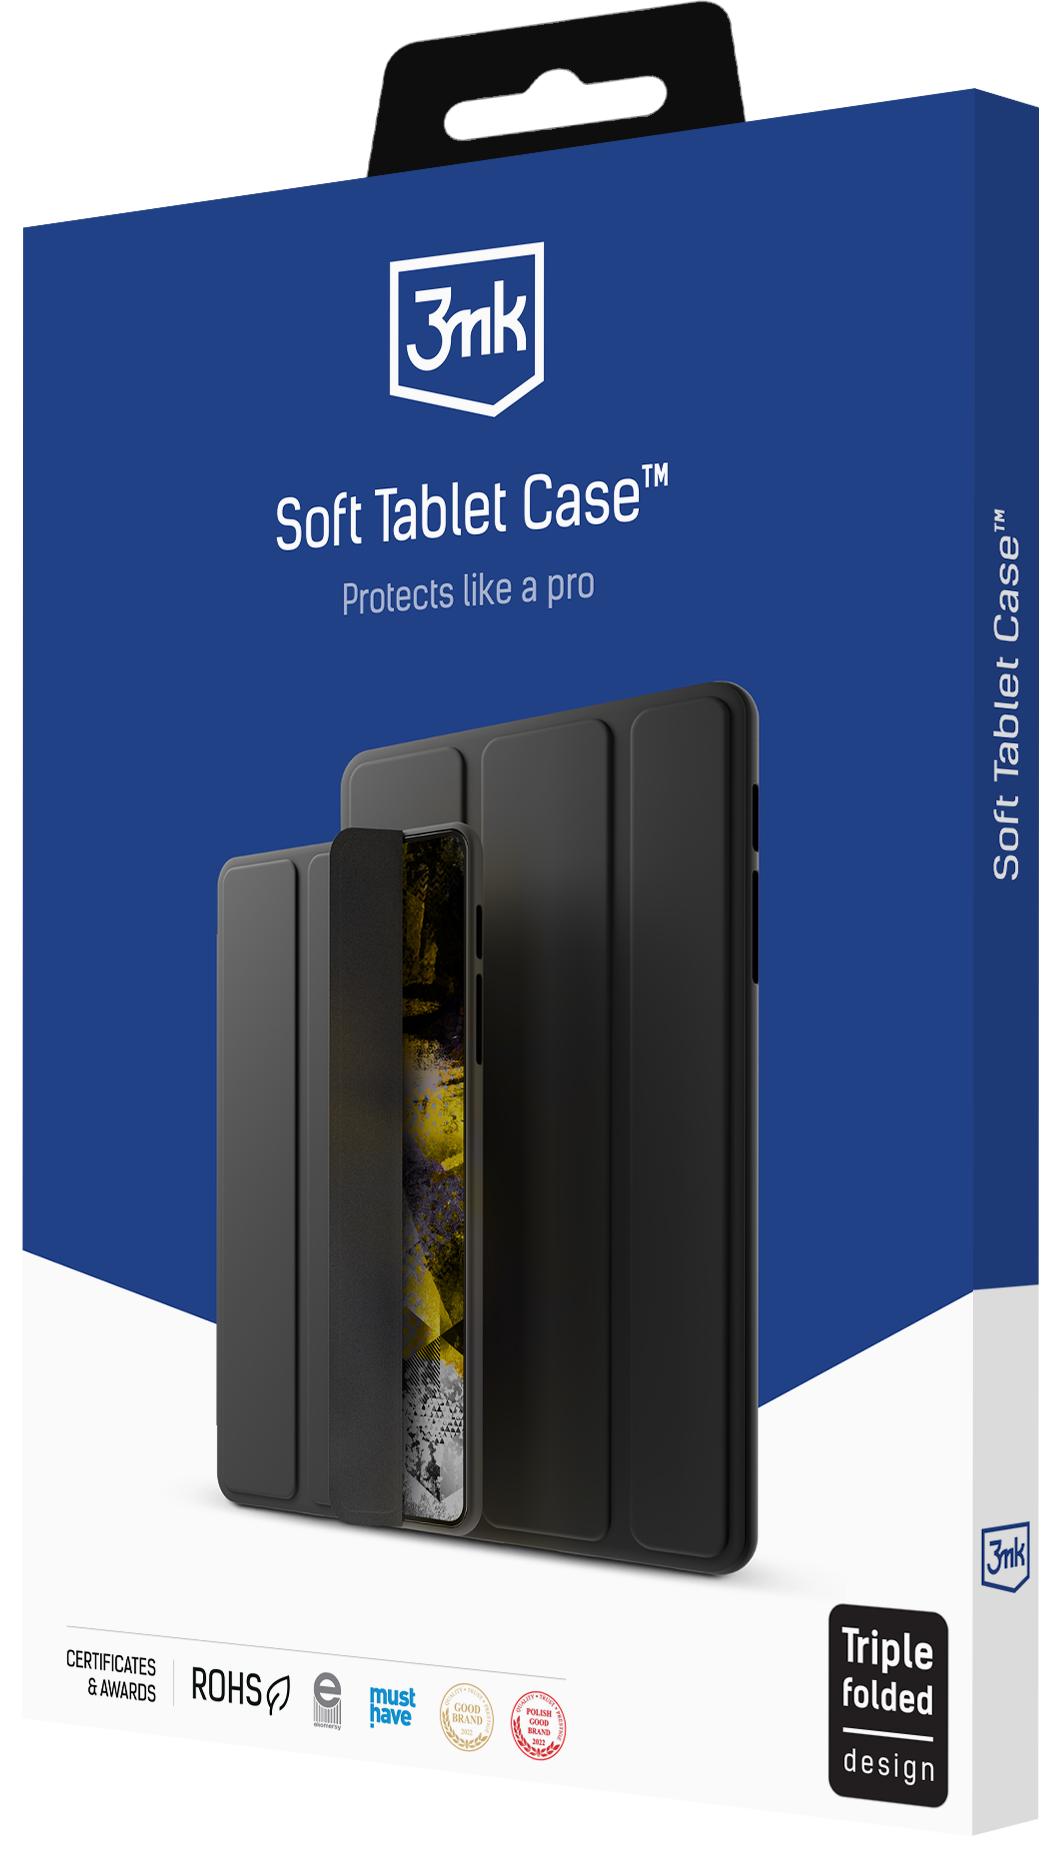 3mk-packshot-Soft-Tablet-Case_